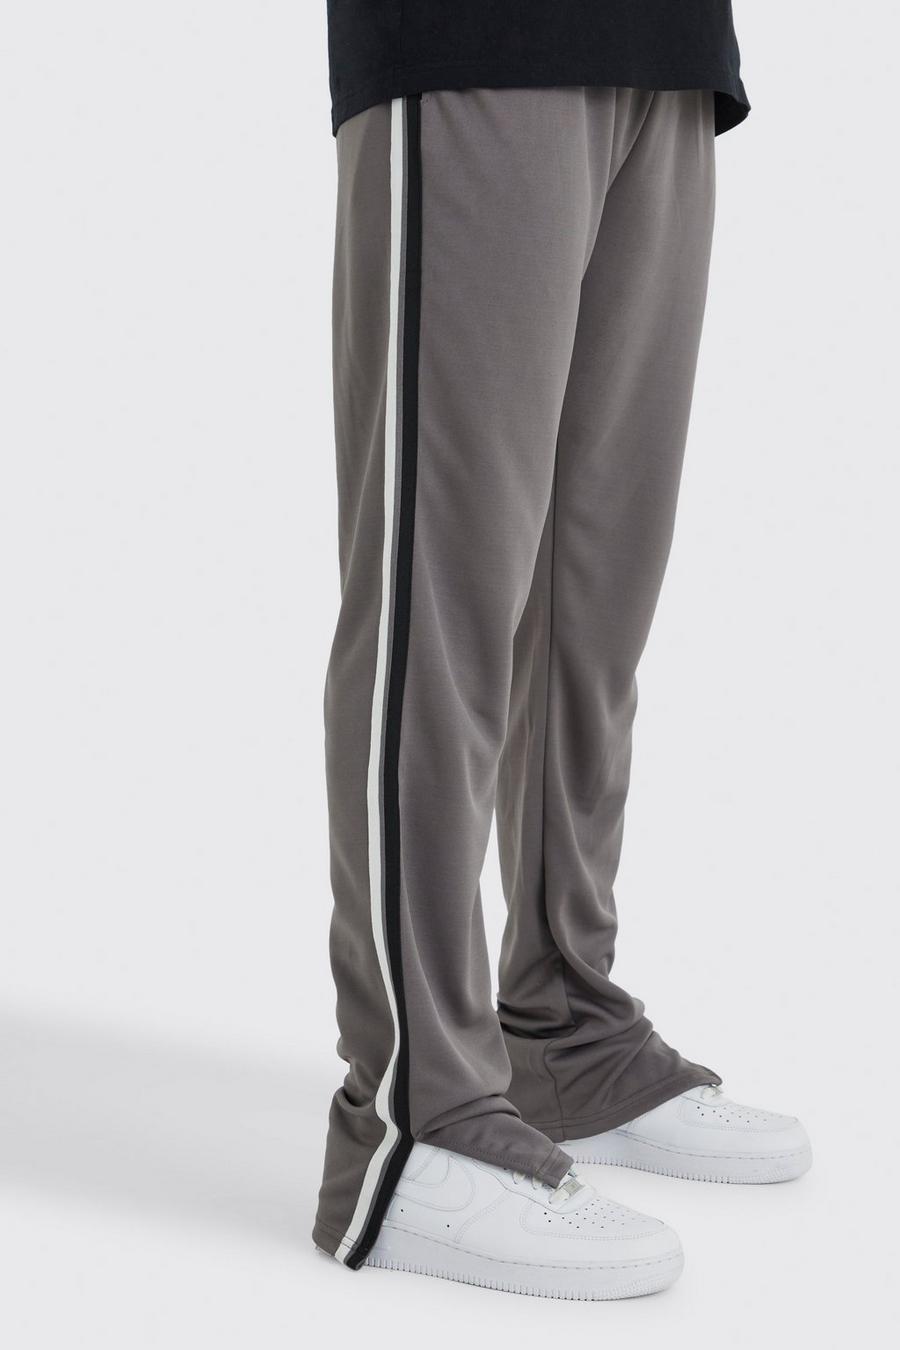 Pantaloni tuta Tall Regular Fit in tricot con striscia laterale e spacco sul fondo, Charcoal